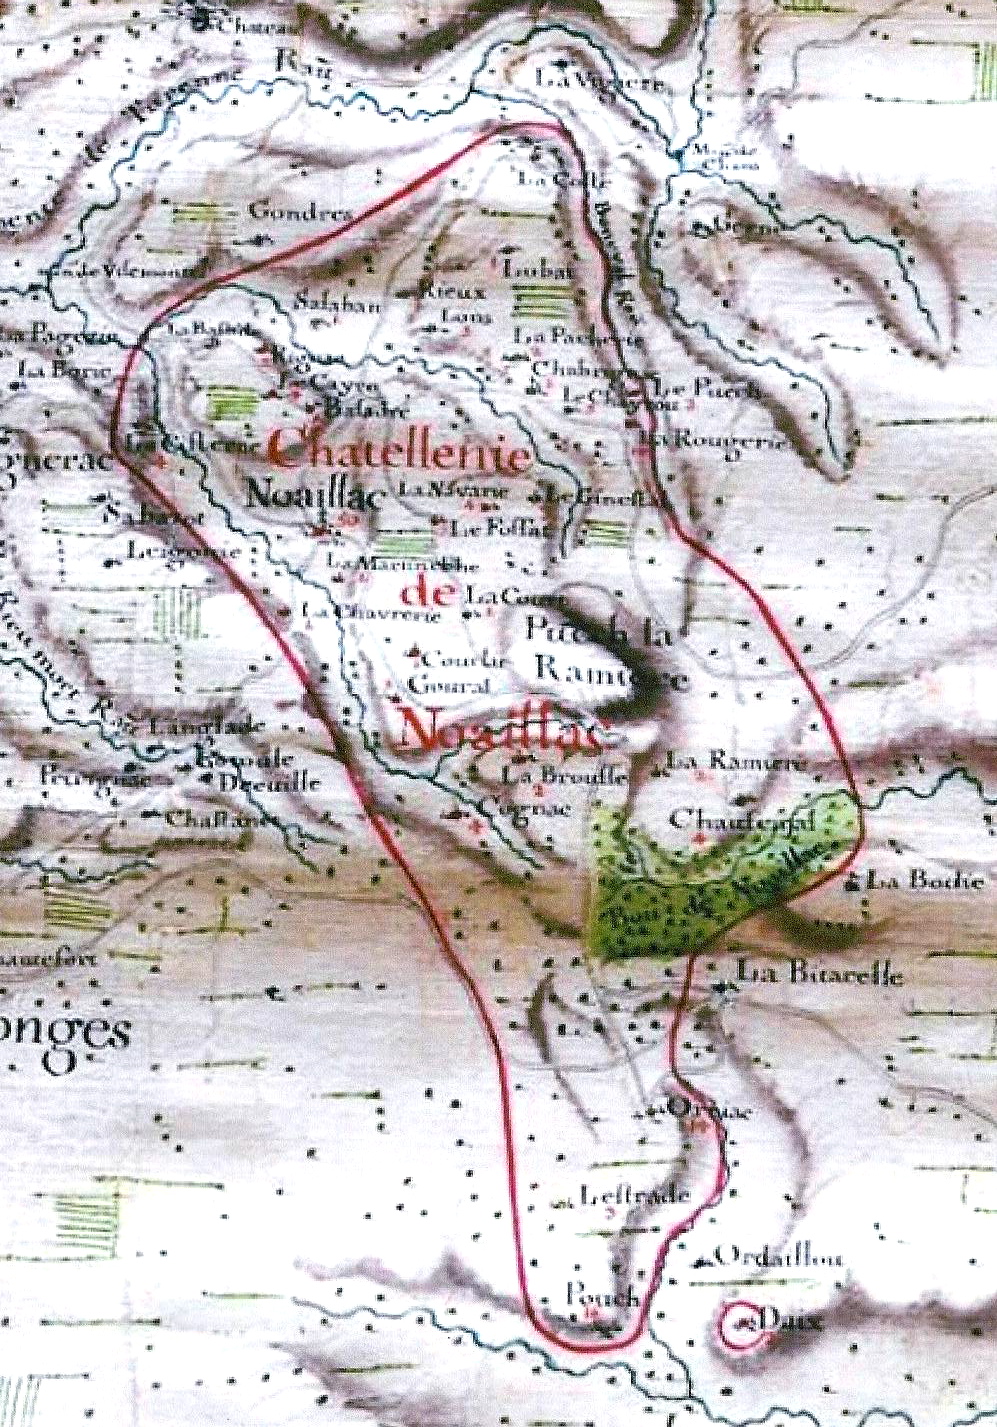 La « Châtellenie de Noaillac »carte du Duché de Noailles du début du 18e siècle